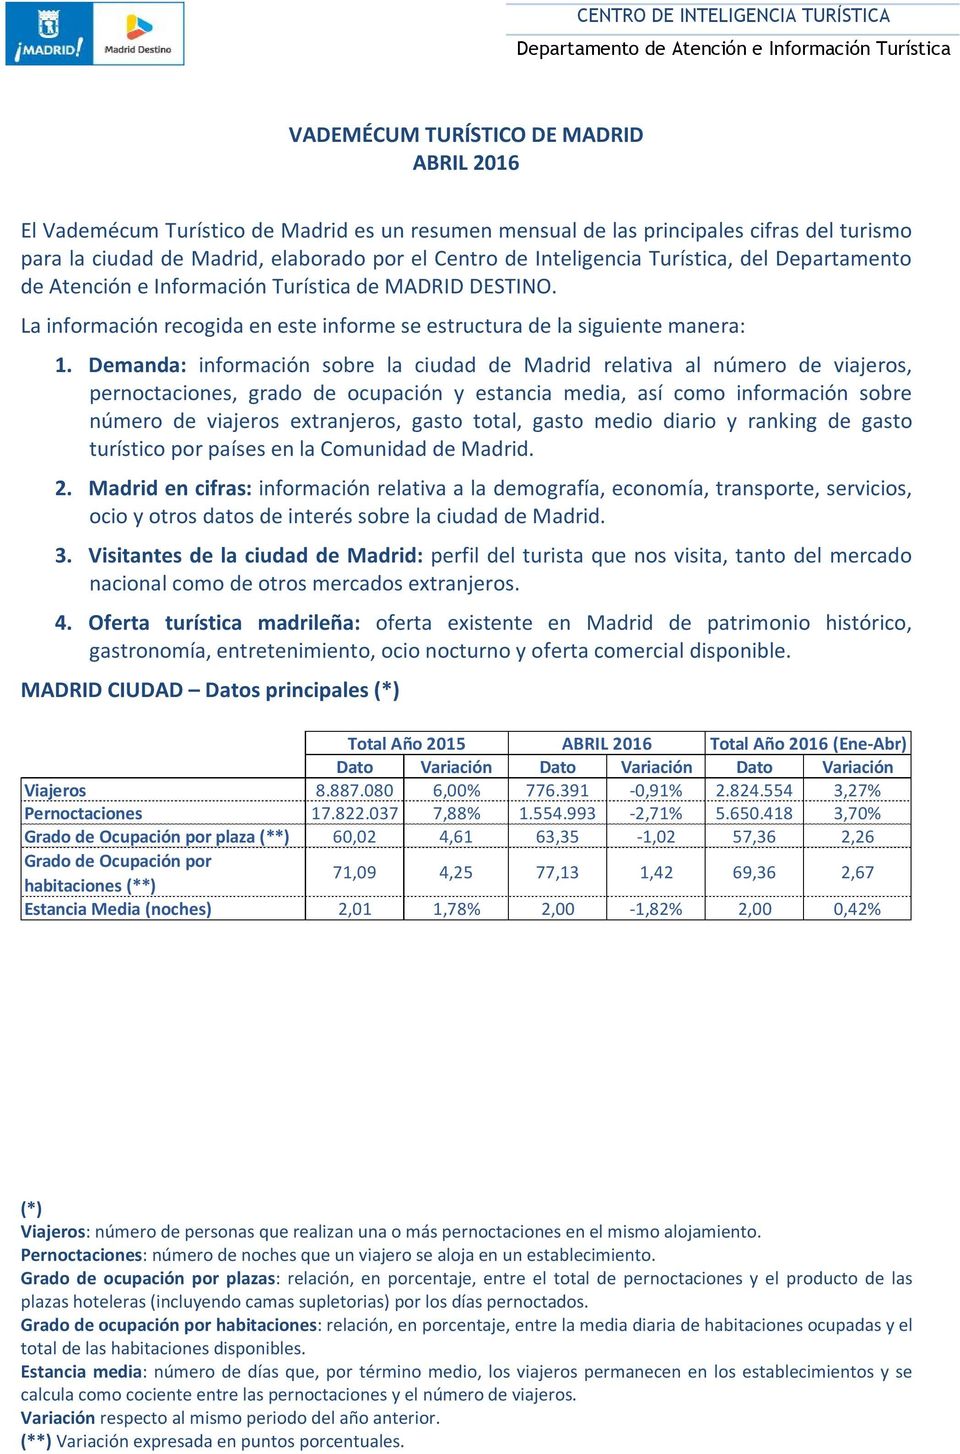 Demanda: información sobre la ciudad de Madrid relativa al número de viajeros, pernoctaciones, grado de ocupación y estancia media, así como información sobre número de viajeros extranjeros, gasto